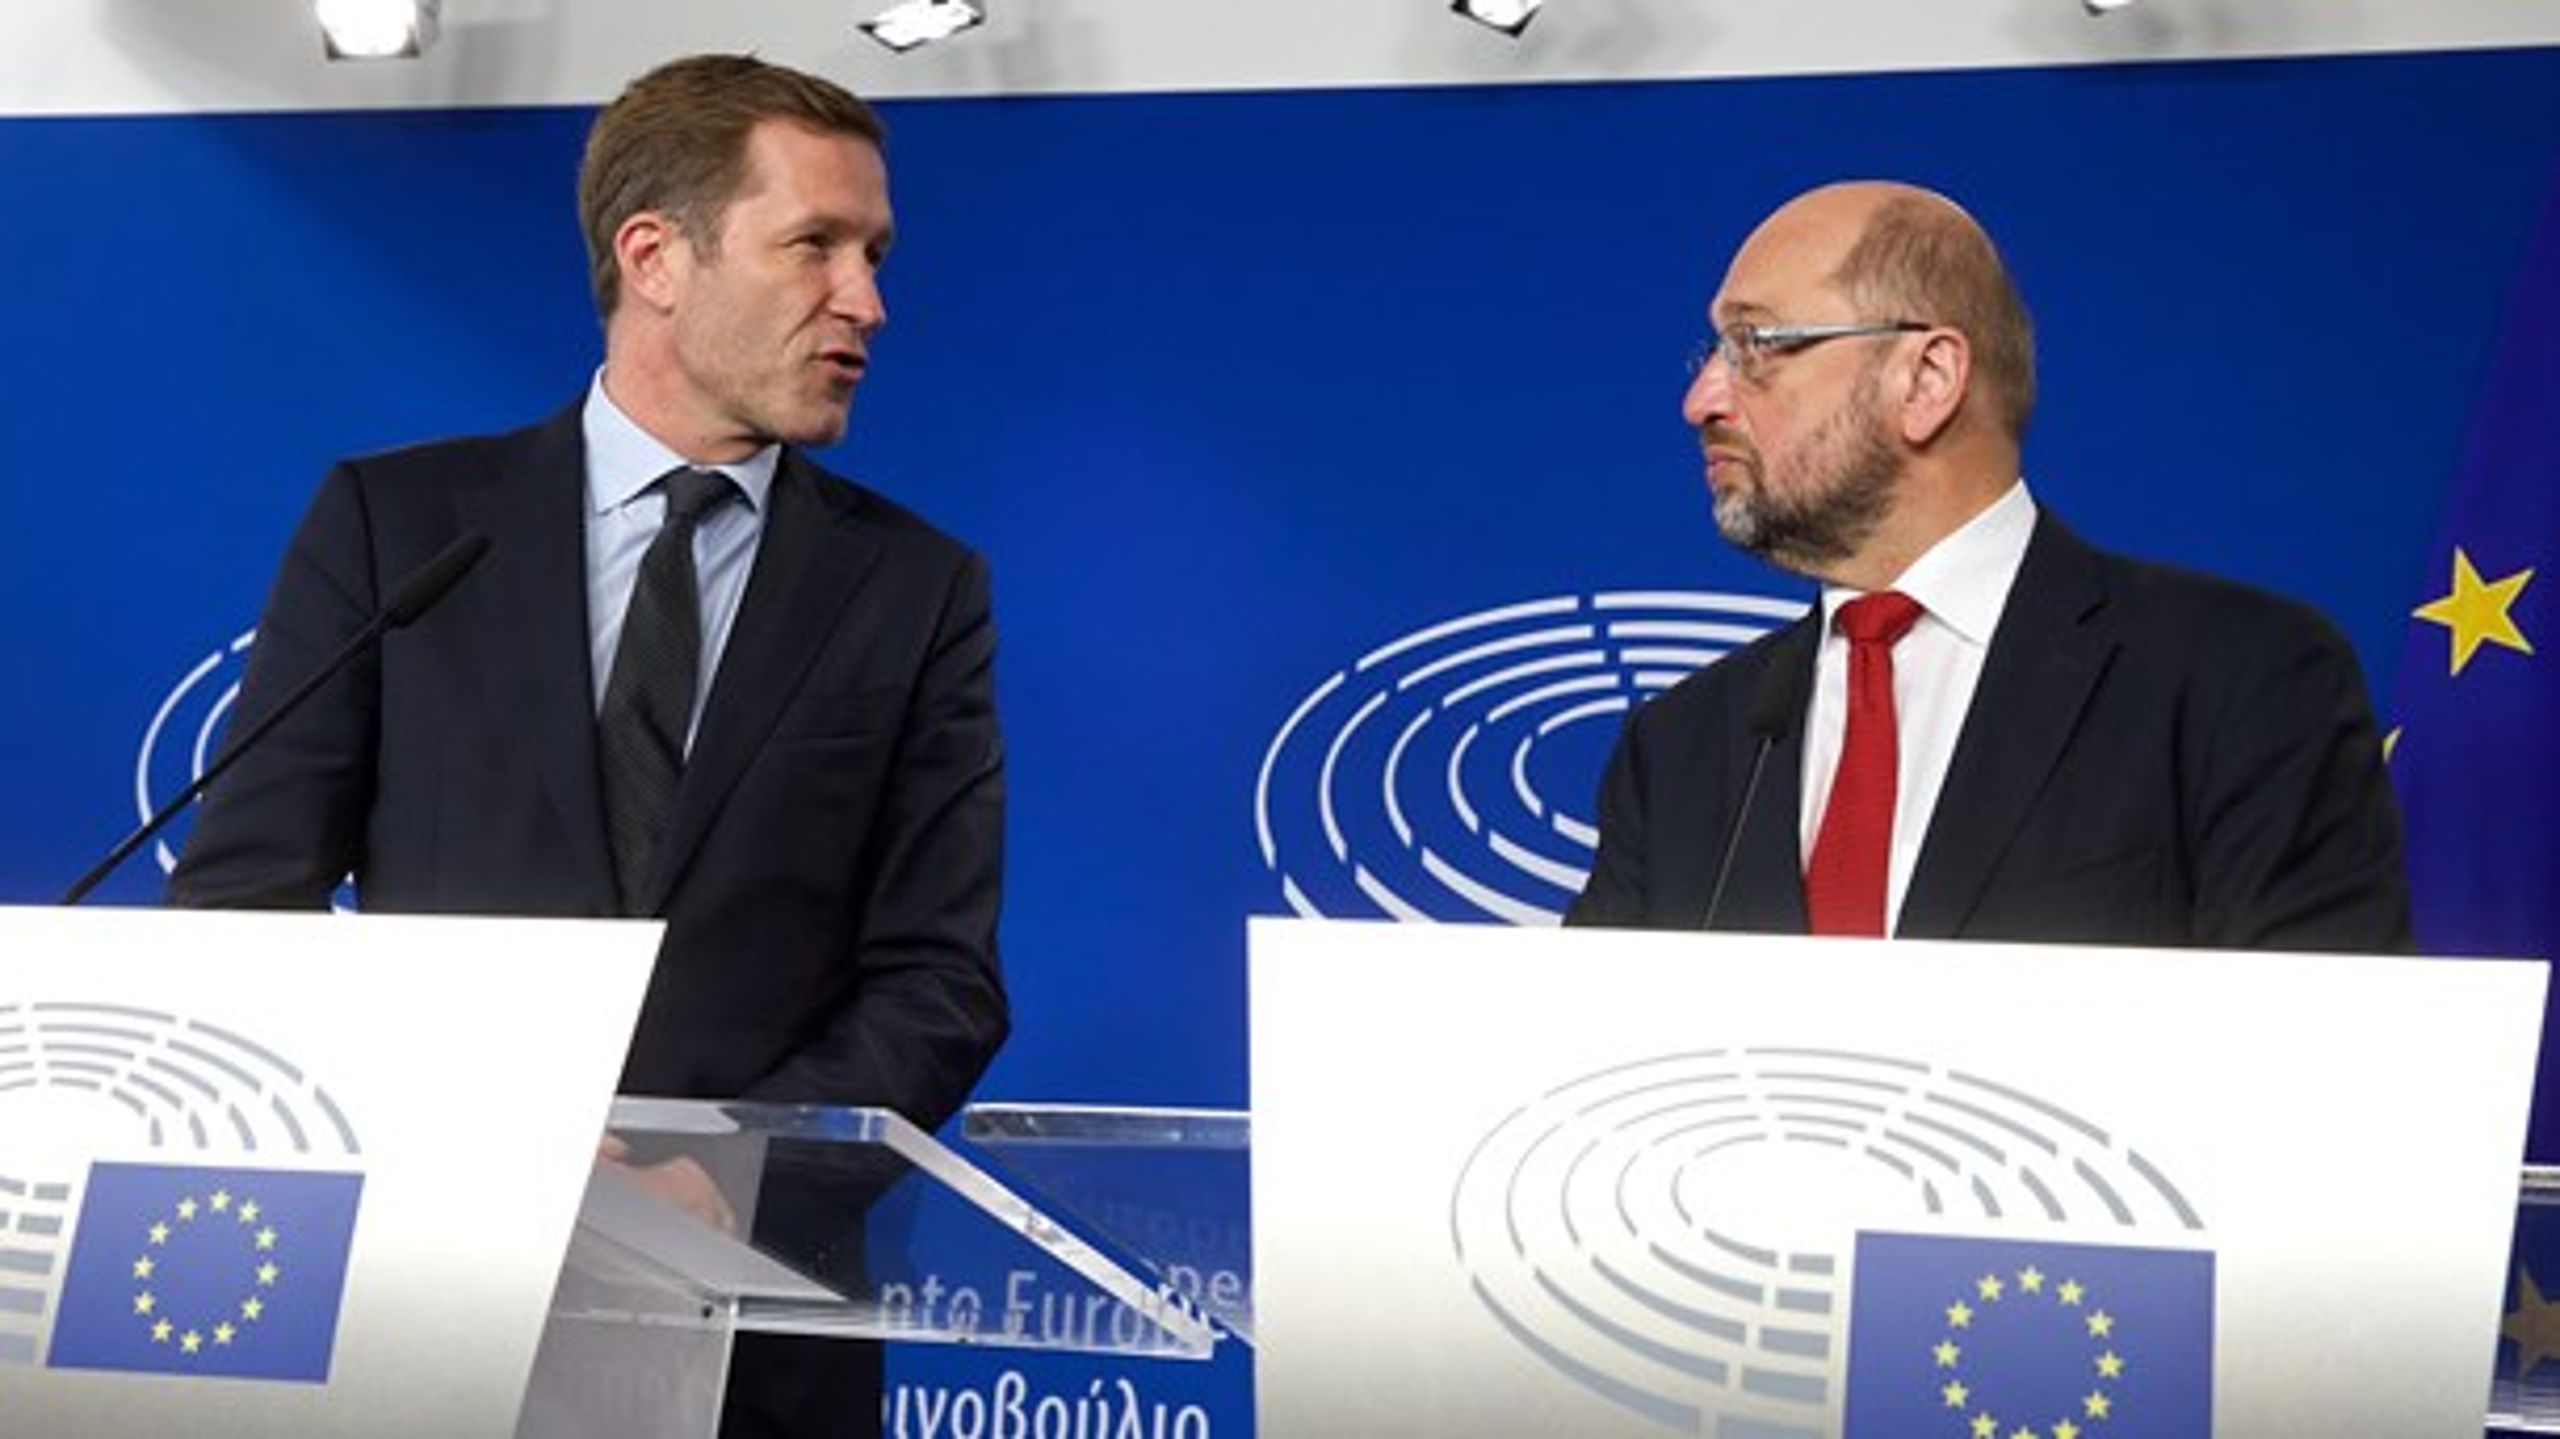 Lørdag mødtes Europa-Parlamentets formand Martin Schulz med Valloniens delstatsleder Paul Magnette. Vallonien blokerer lige nu for, at EU kan indgå en frihandelsaftale med Canada. Efter mødet erklærede Schulz, at der er "grund til optimisme".